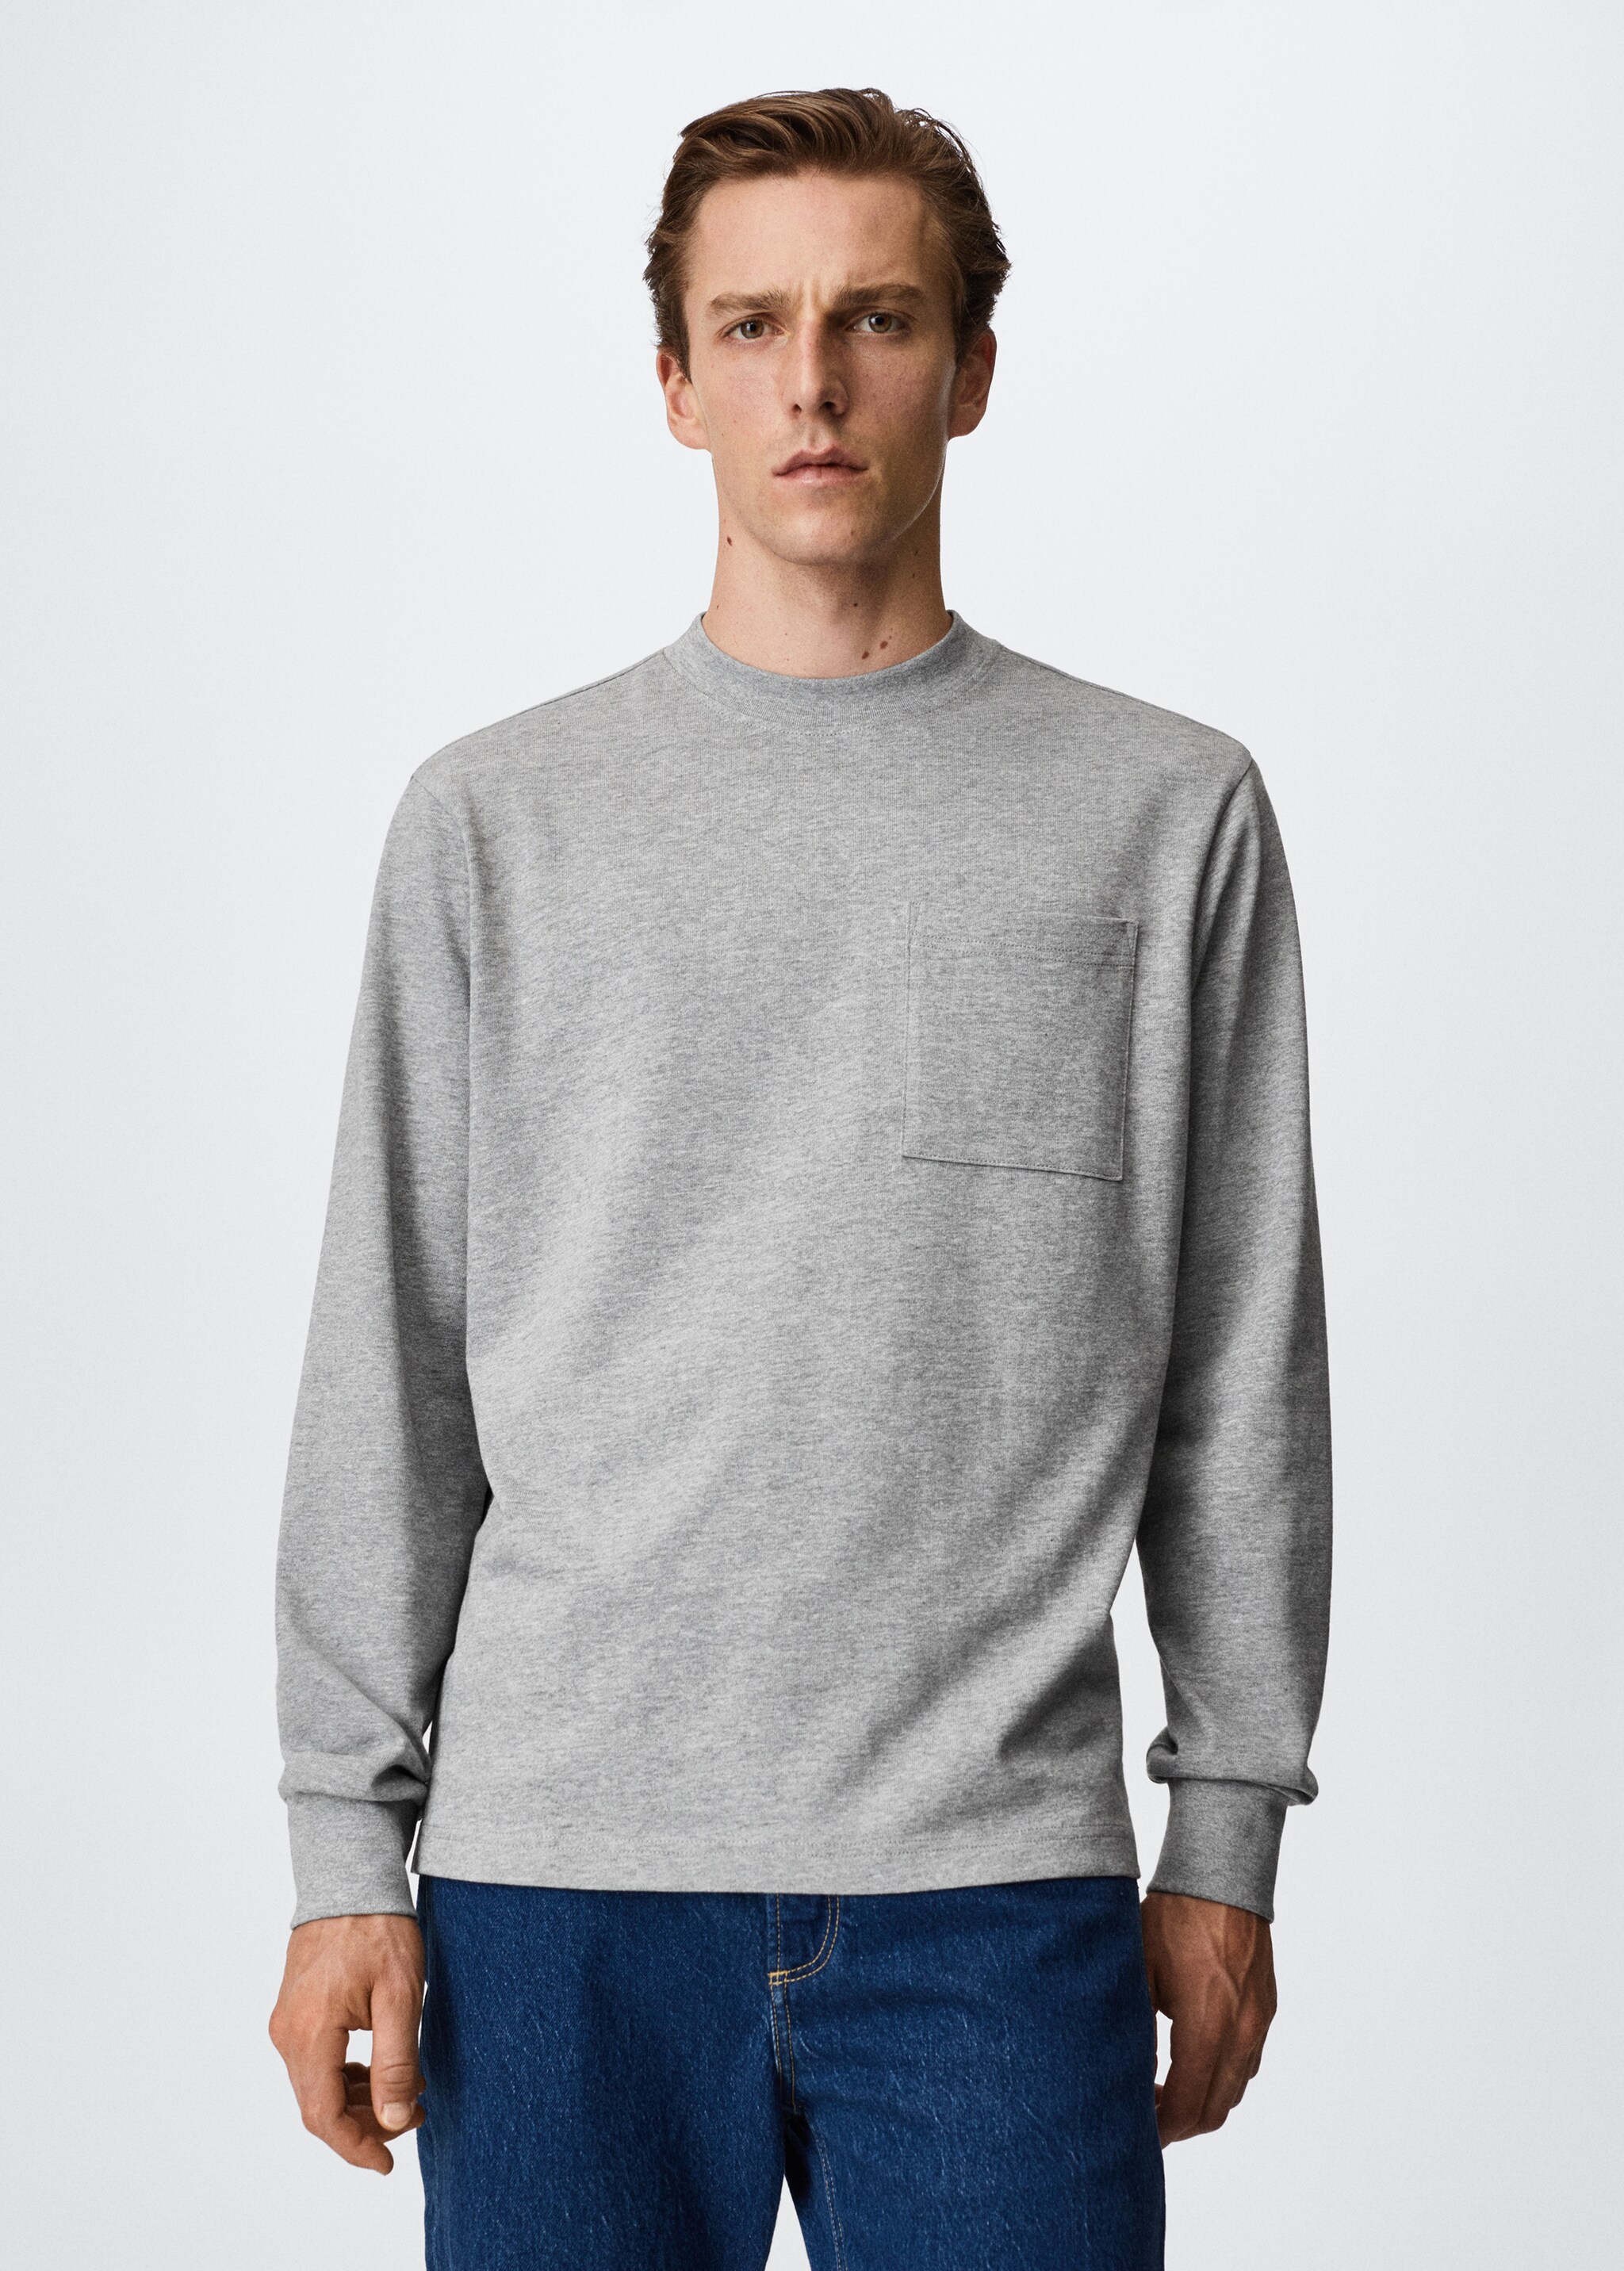 Camiseta algodón manga larga - Plano medio